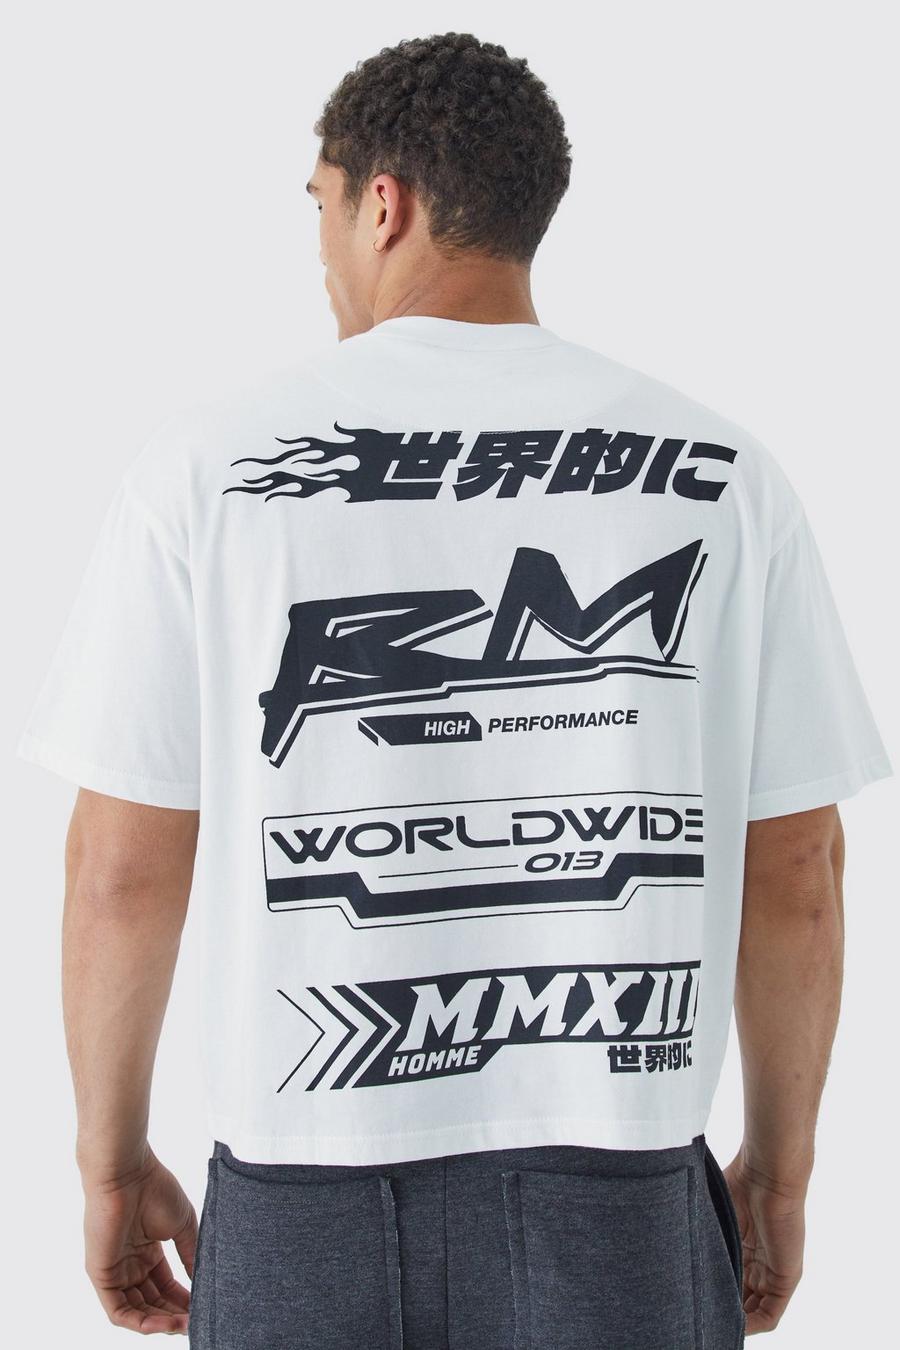 Kastiges Oversize T-Shirt mit Print und Gummi-Etikett, White